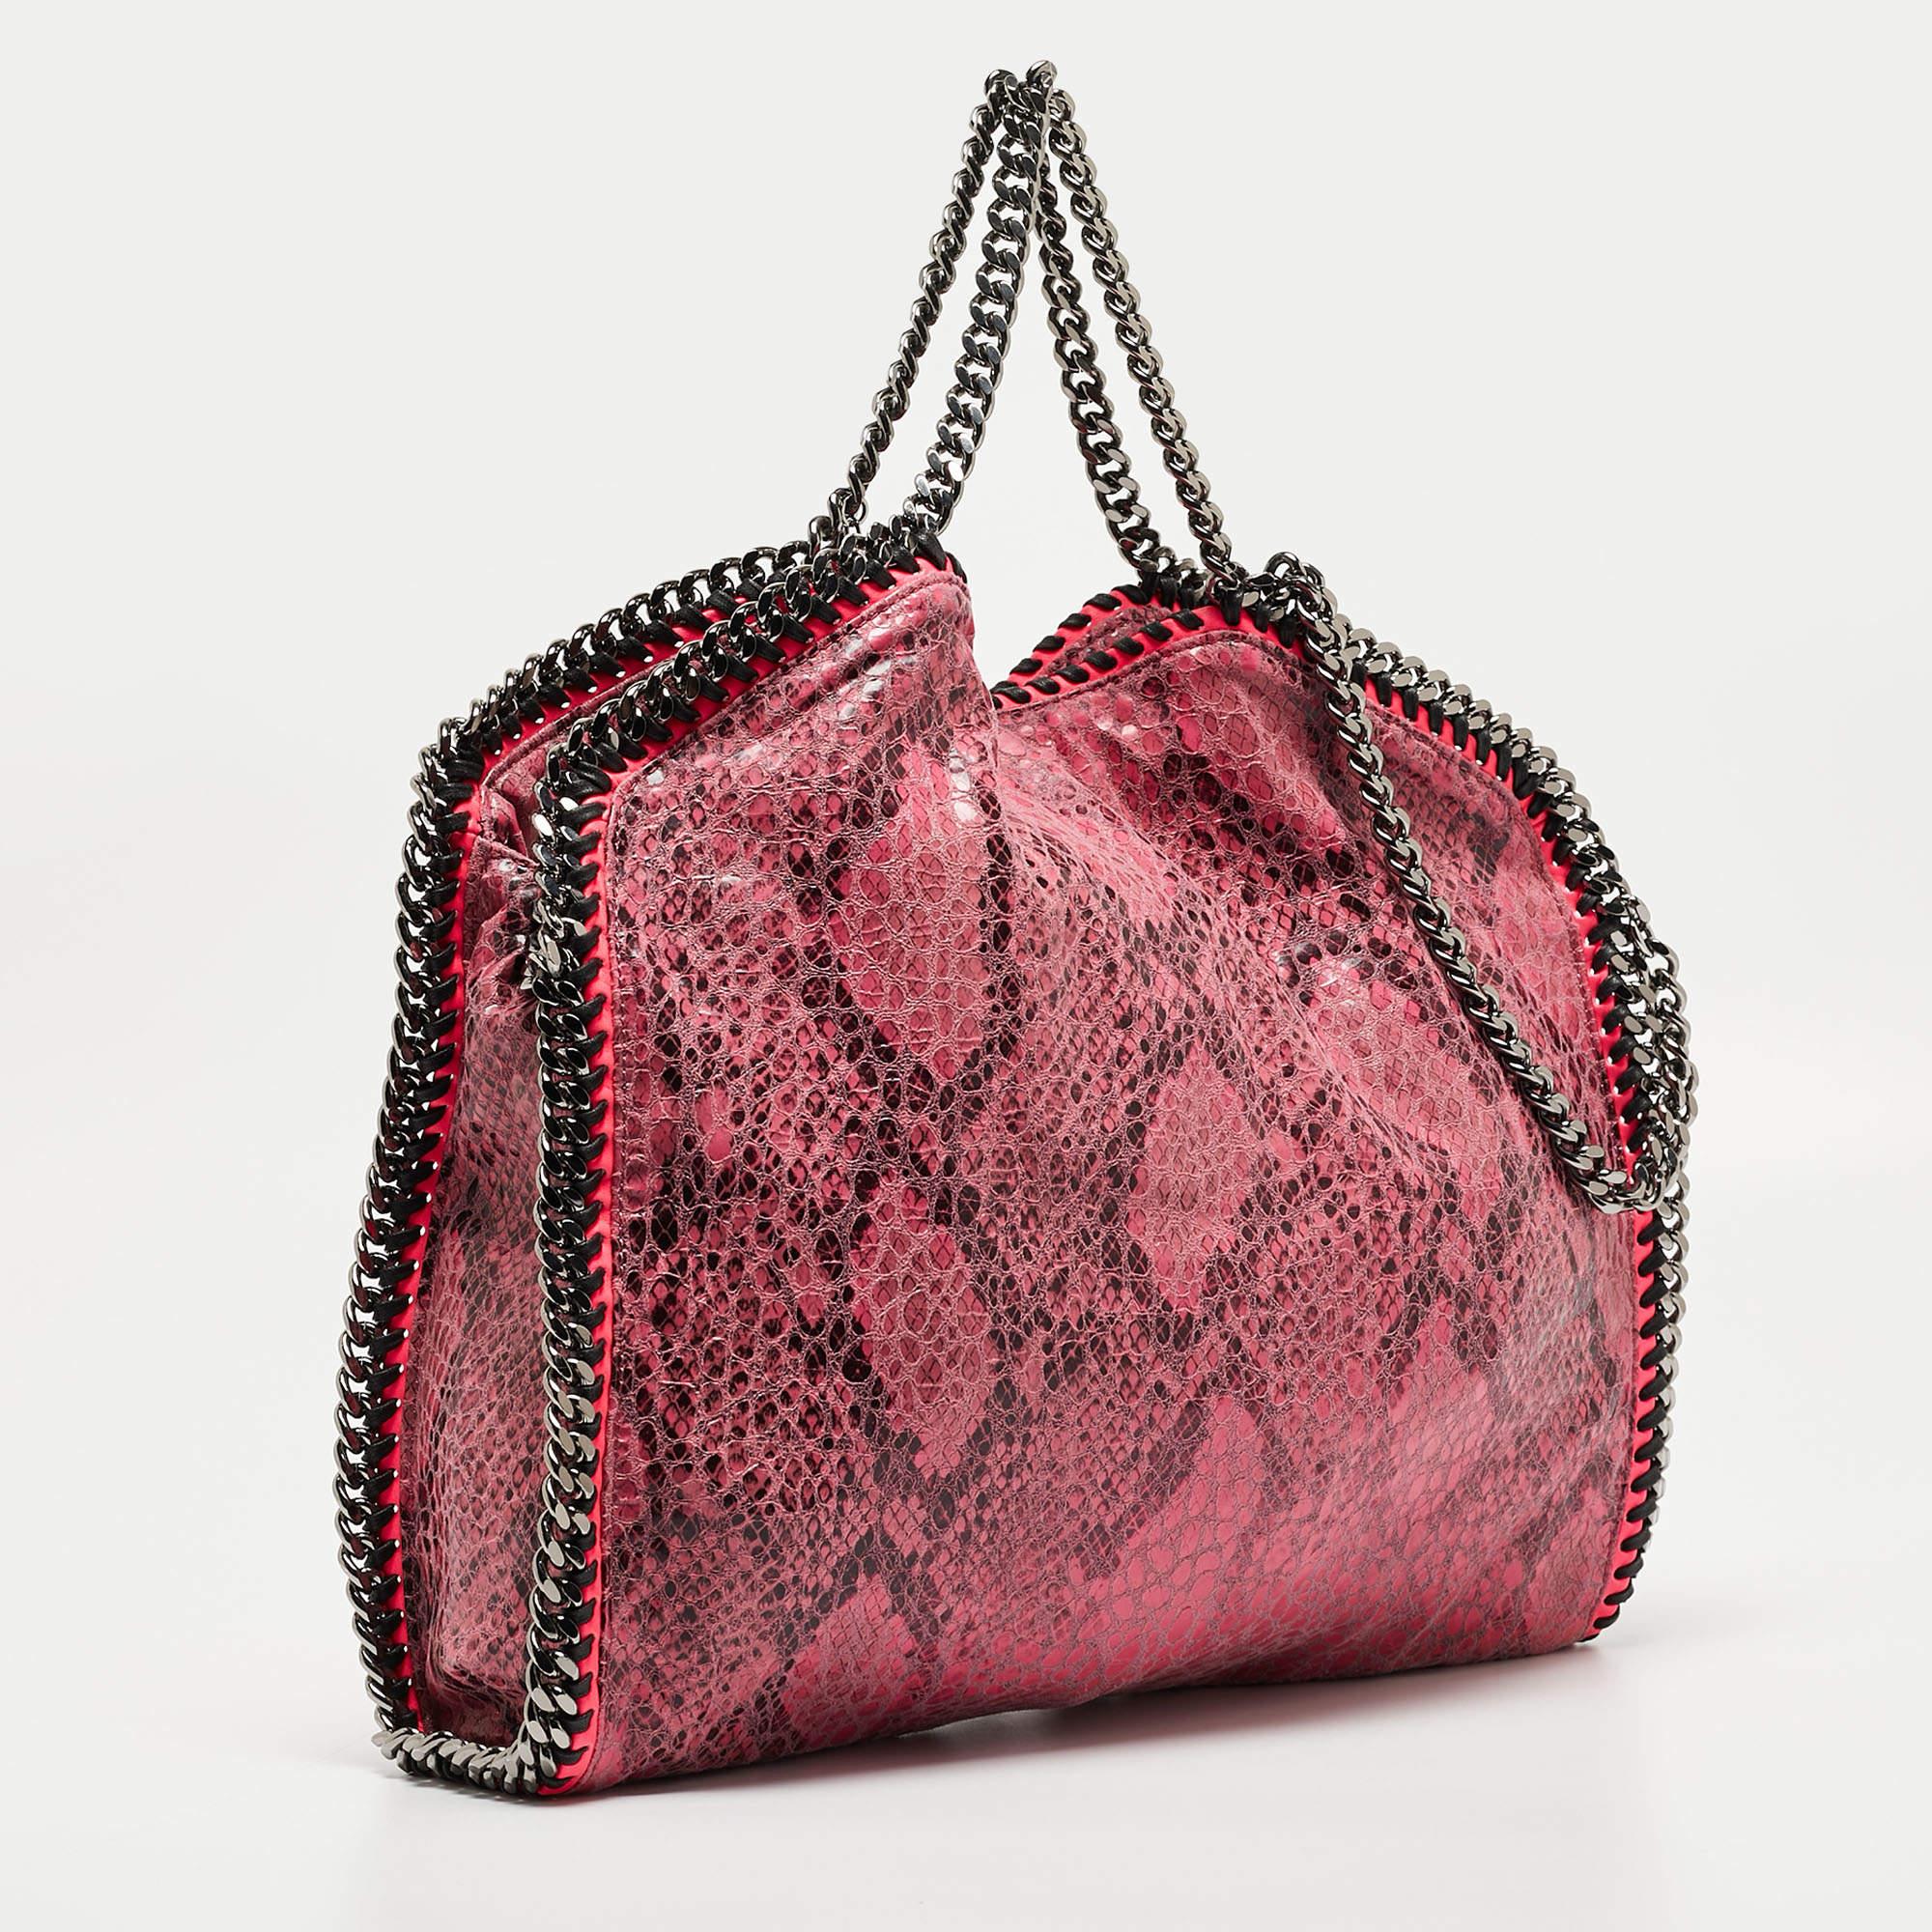 Diese Falabella Tasche von Stella McCartney ist eine Schönheit. Sie ist aus Pythonlederimitat gefertigt und damit langlebig und stilvoll. Während die Kettendetails die Schönheit der Tasche unterstreichen, bietet das gefütterte Innere Platz für all